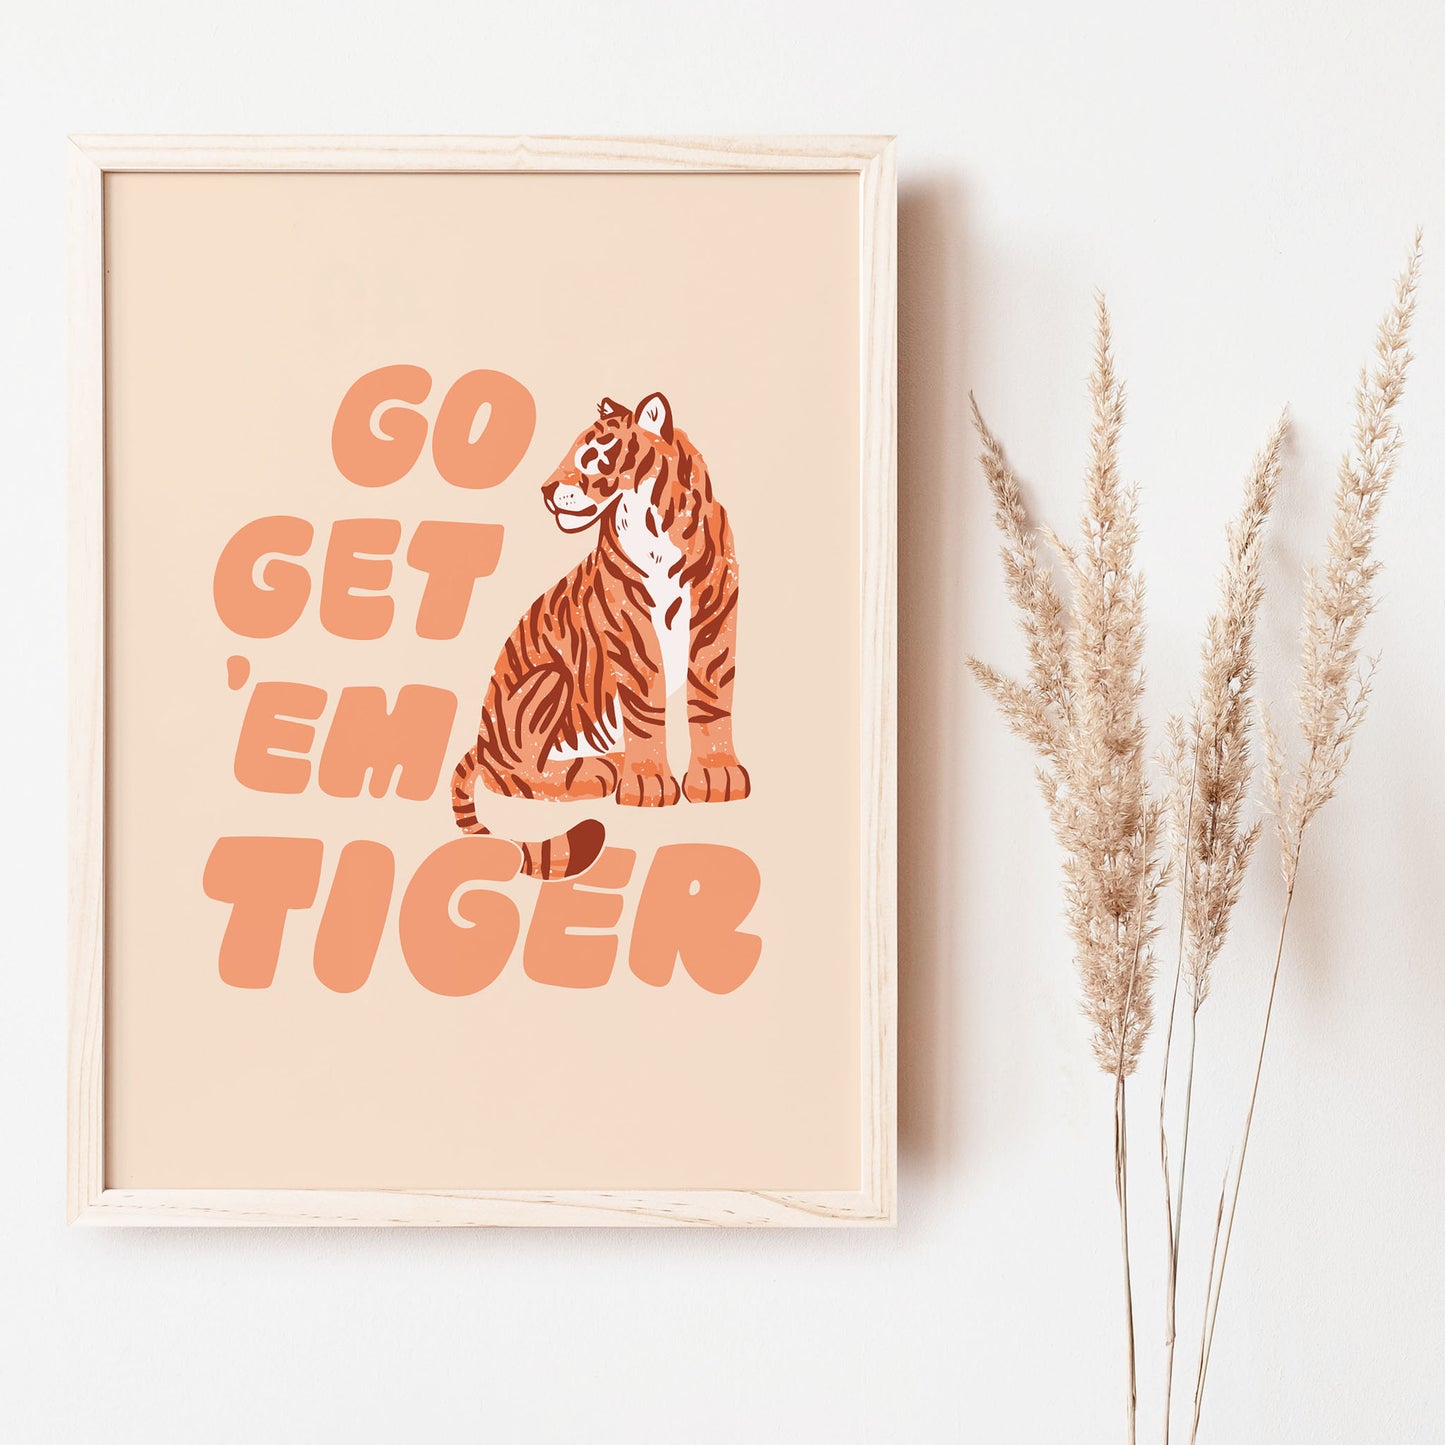 Go Get 'Em Tiger orange art print great for kids spaces